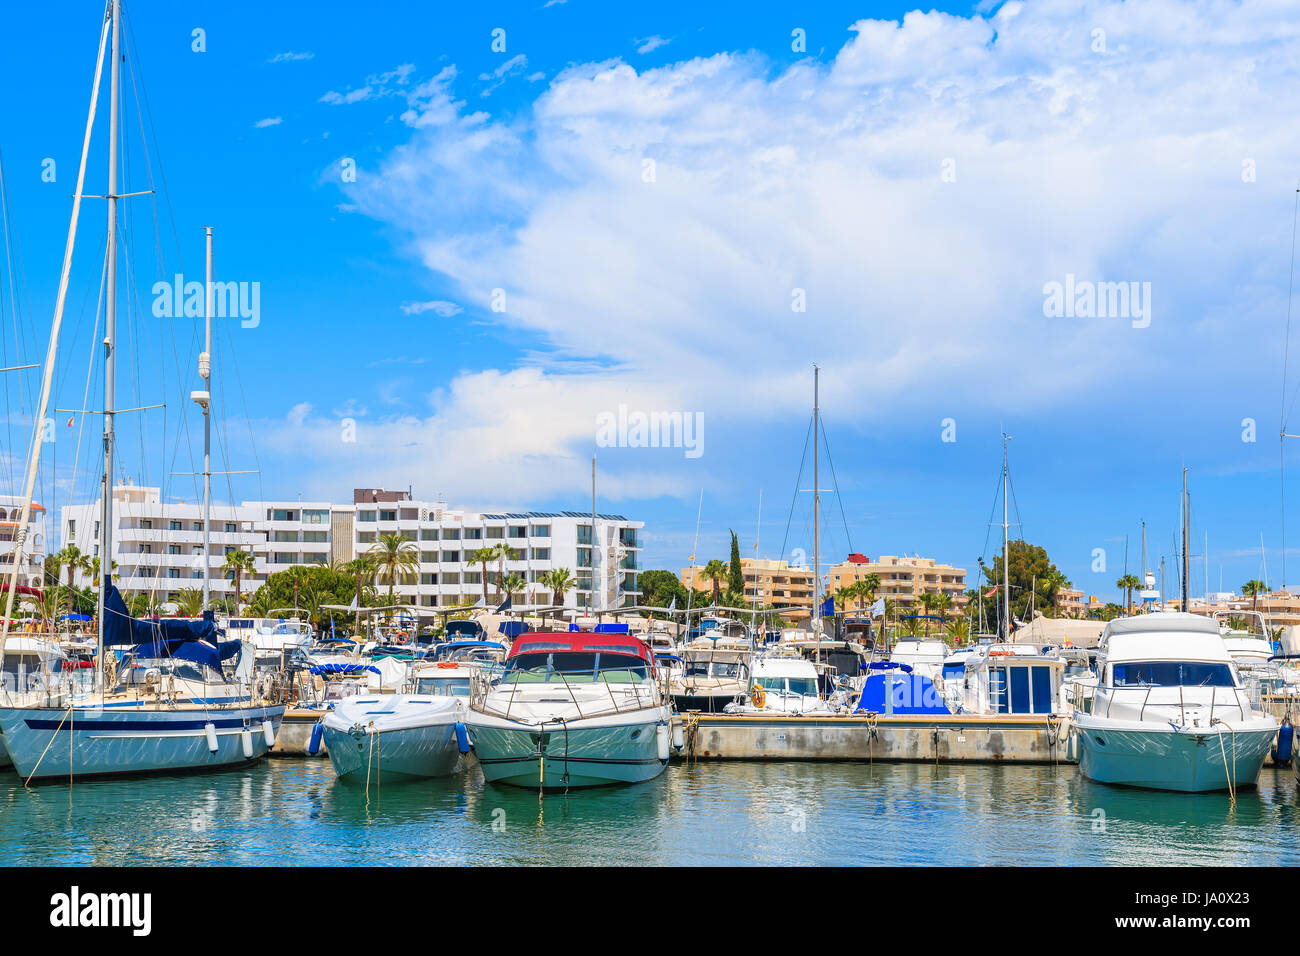 Motor and sailing boats anchoring in Santa Eularia modern marina, Ibiza island, Spain Stock Photo